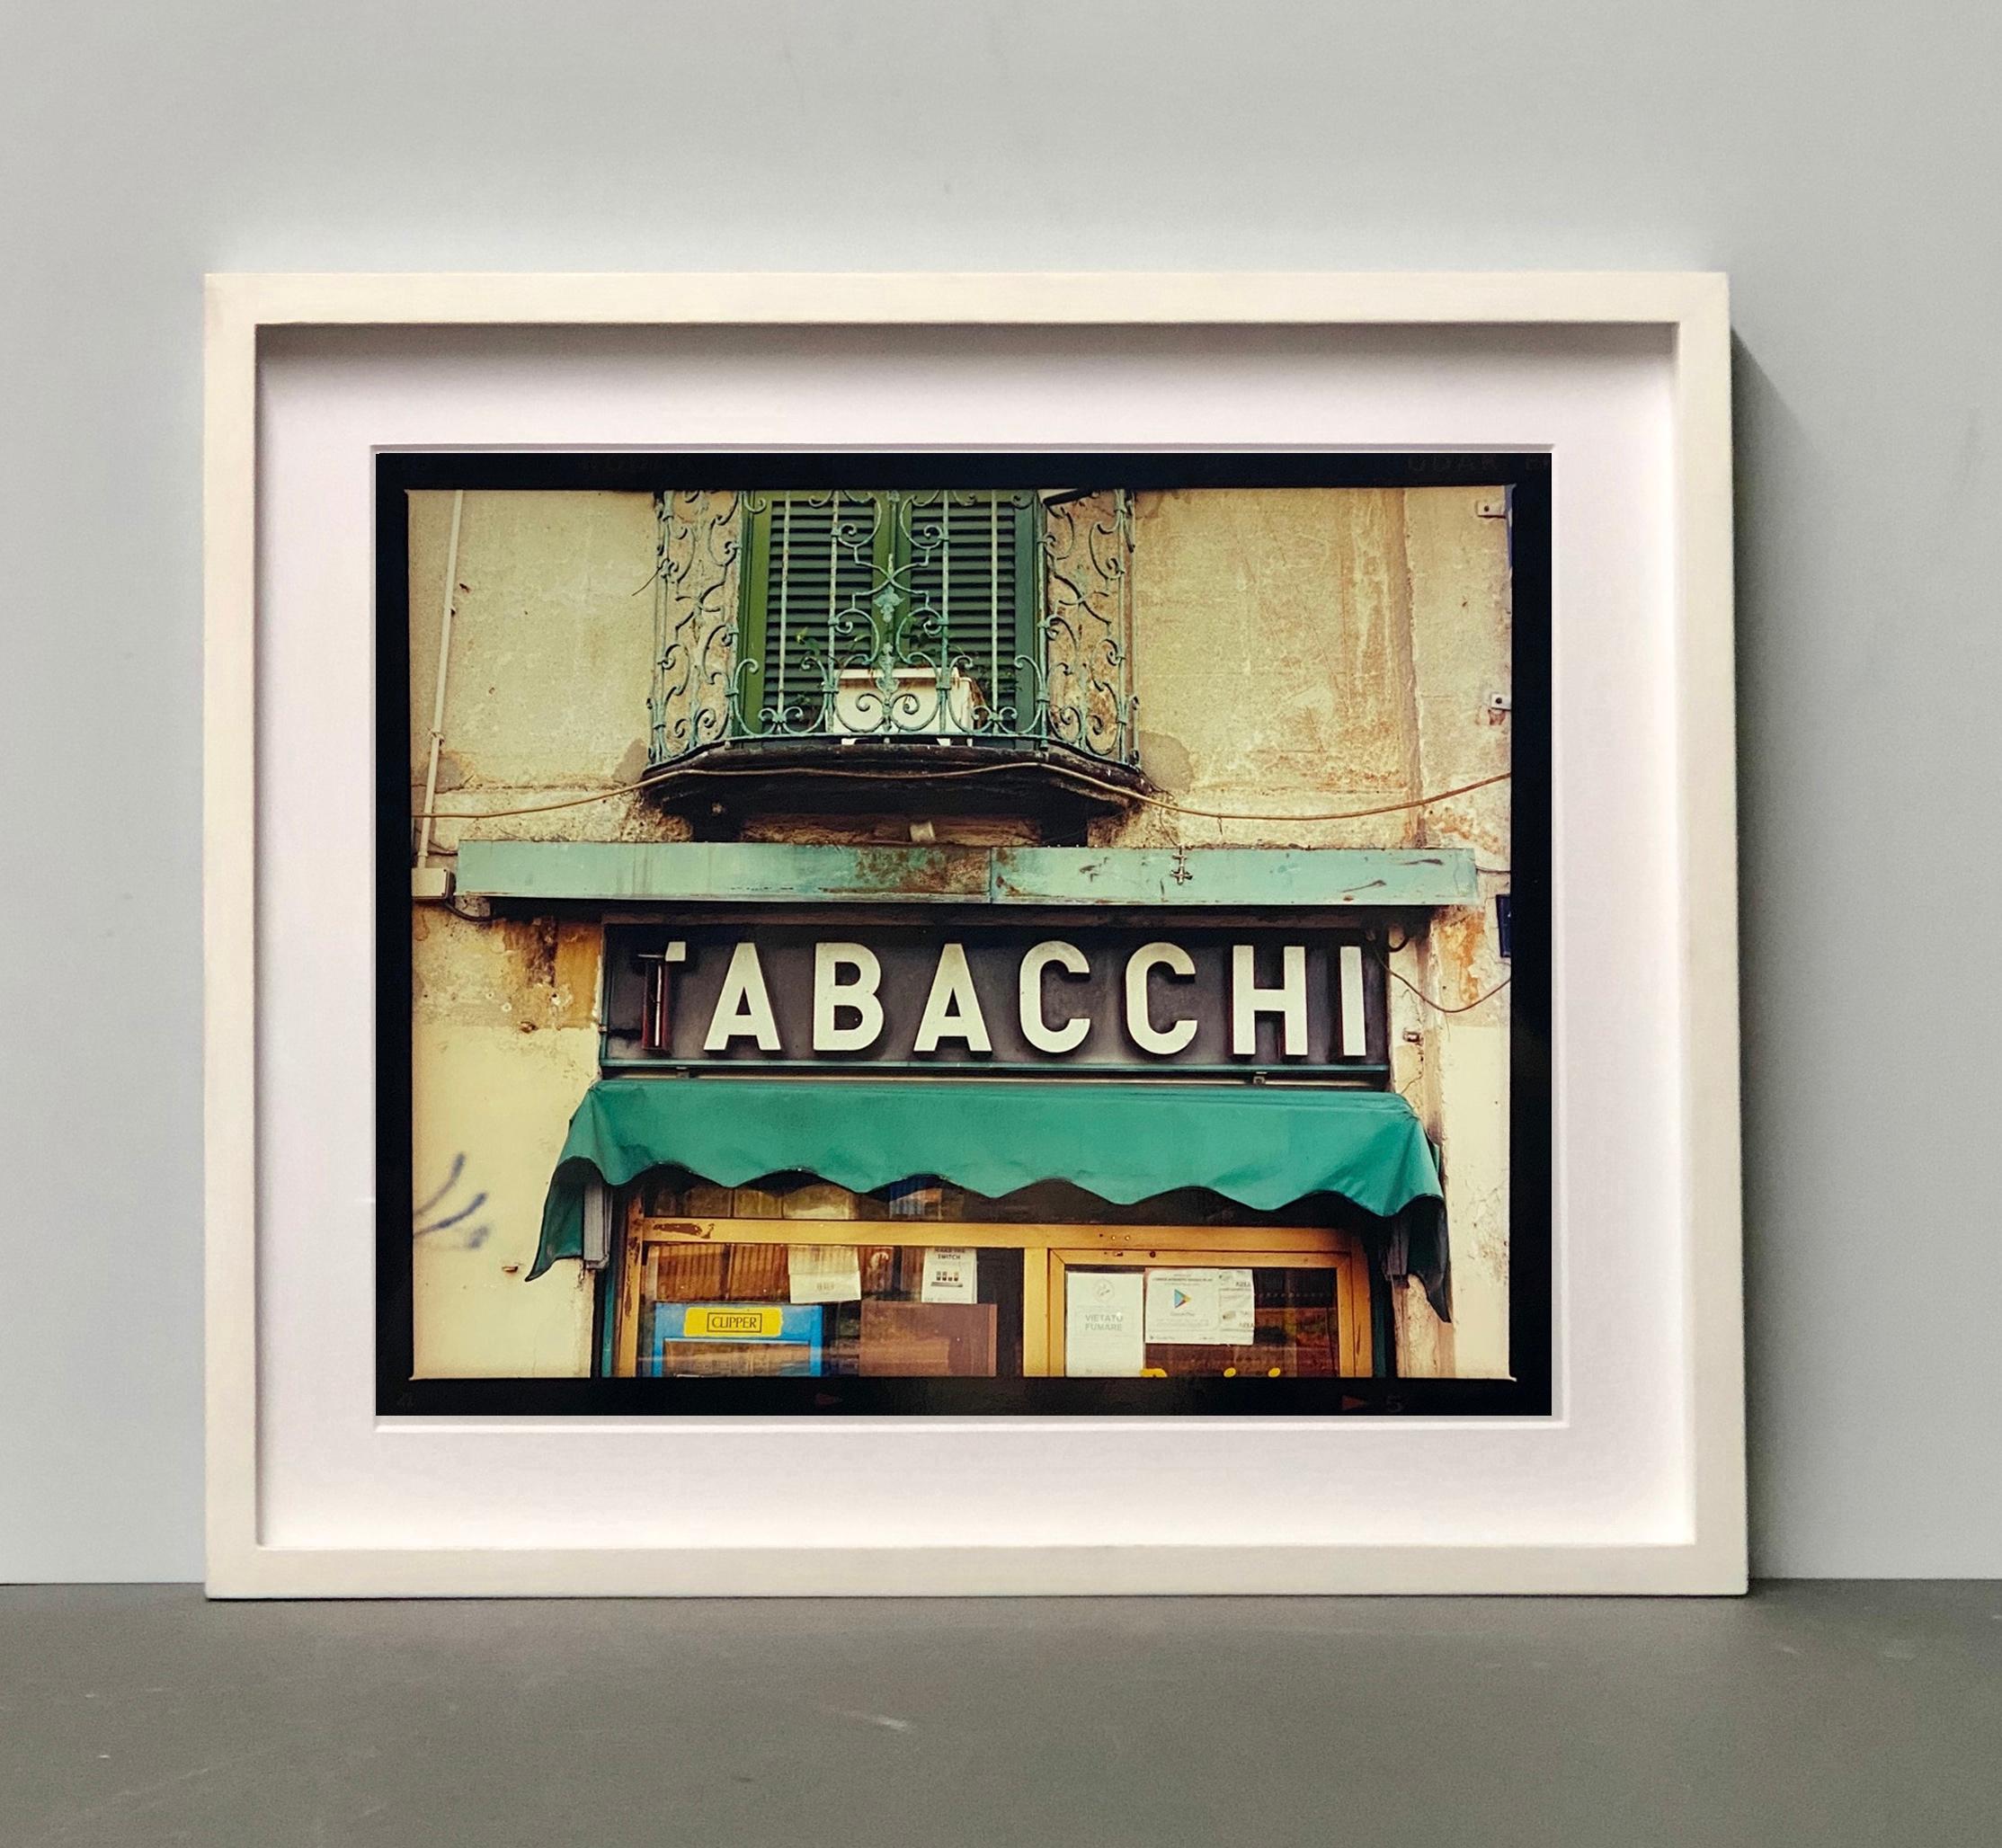 TABACCHI-Schild, Mailand – zeitgenössische Typografie, Pop-Art-Farbfotografie (Zeitgenössisch), Print, von Richard Heeps